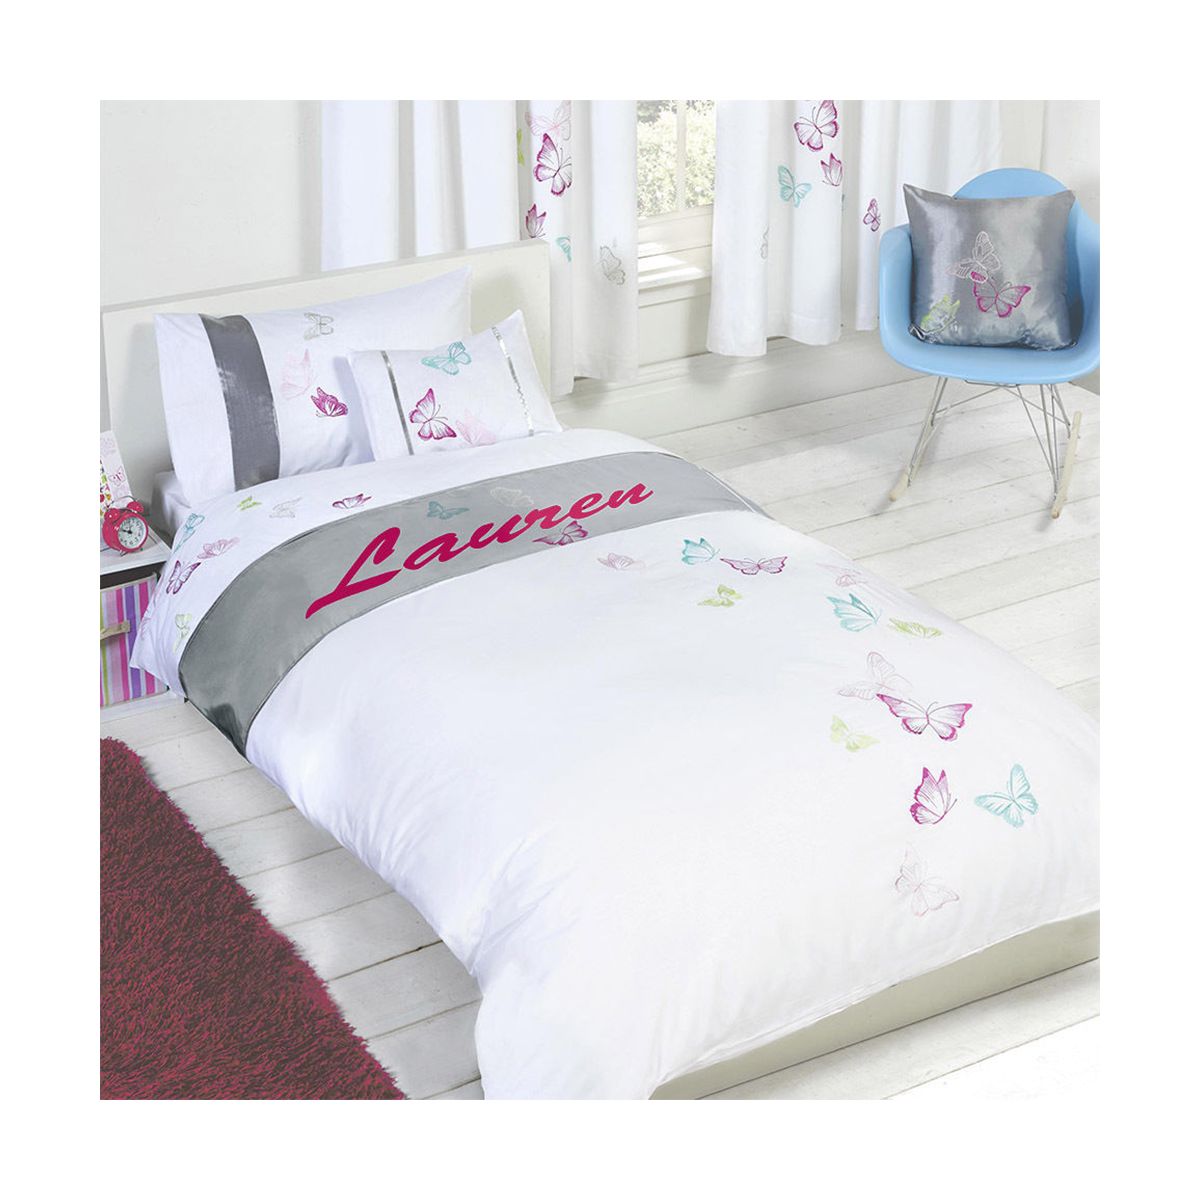 Tobias Baker Personalised Butterfly Duvet Cover Pillow Case Bedding Set - Lauren, Single